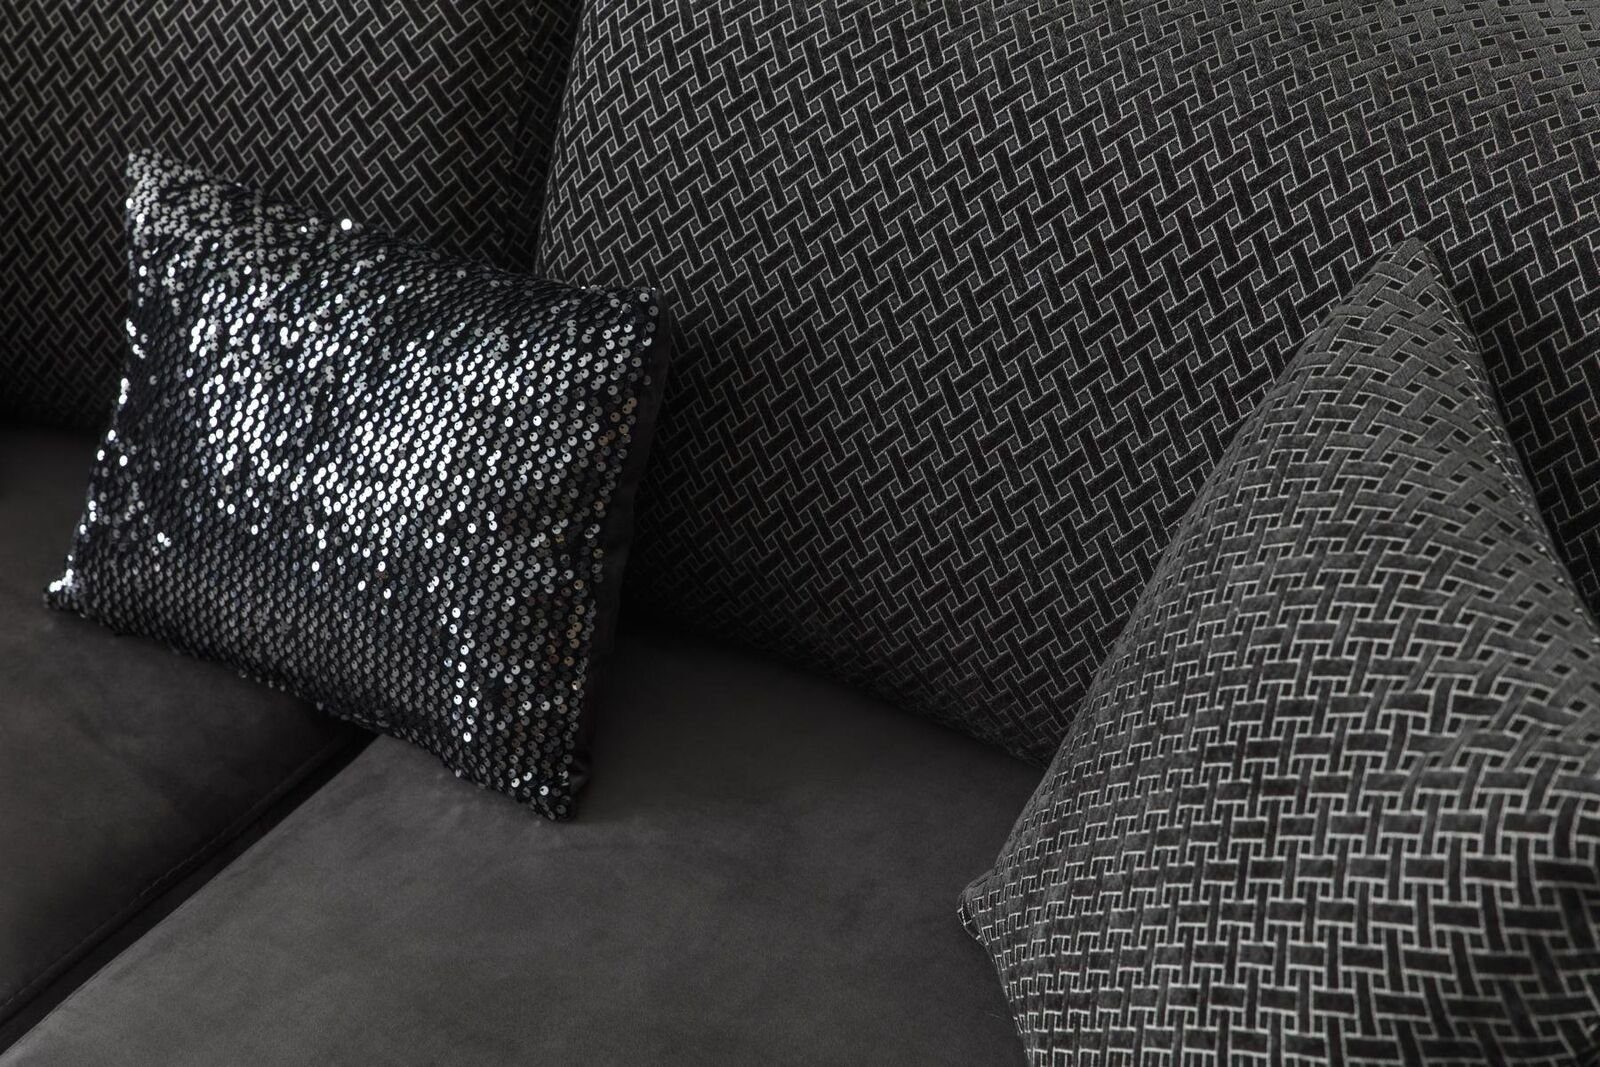 Gebogene Sofa Luxus Wohnzimmer Design JVmoebel Couch Dreisitzer Sofa Stoff